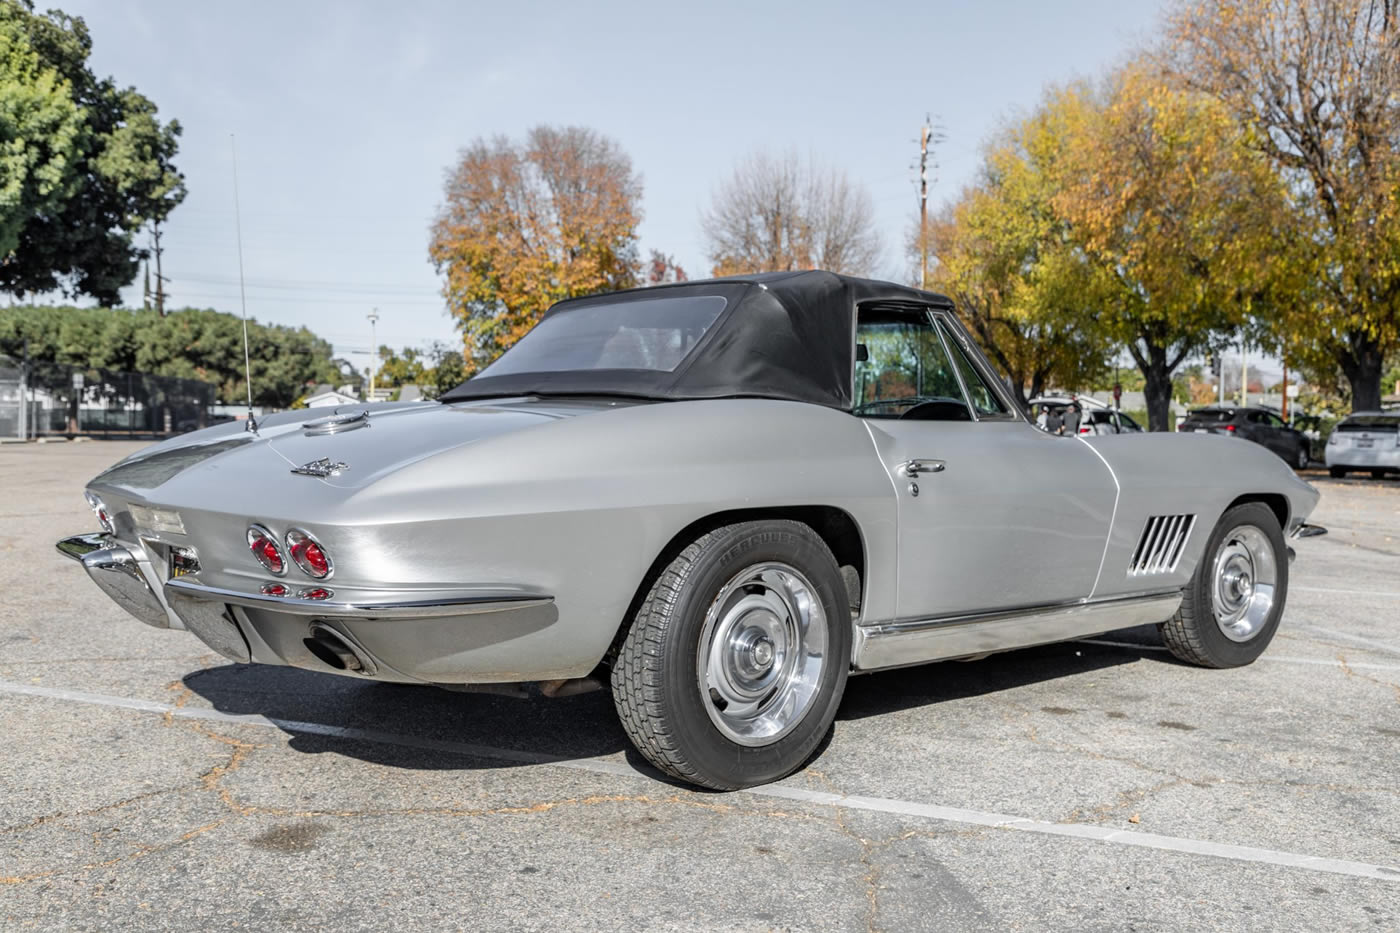 1967 Corvette Convertible in Silver Pearl